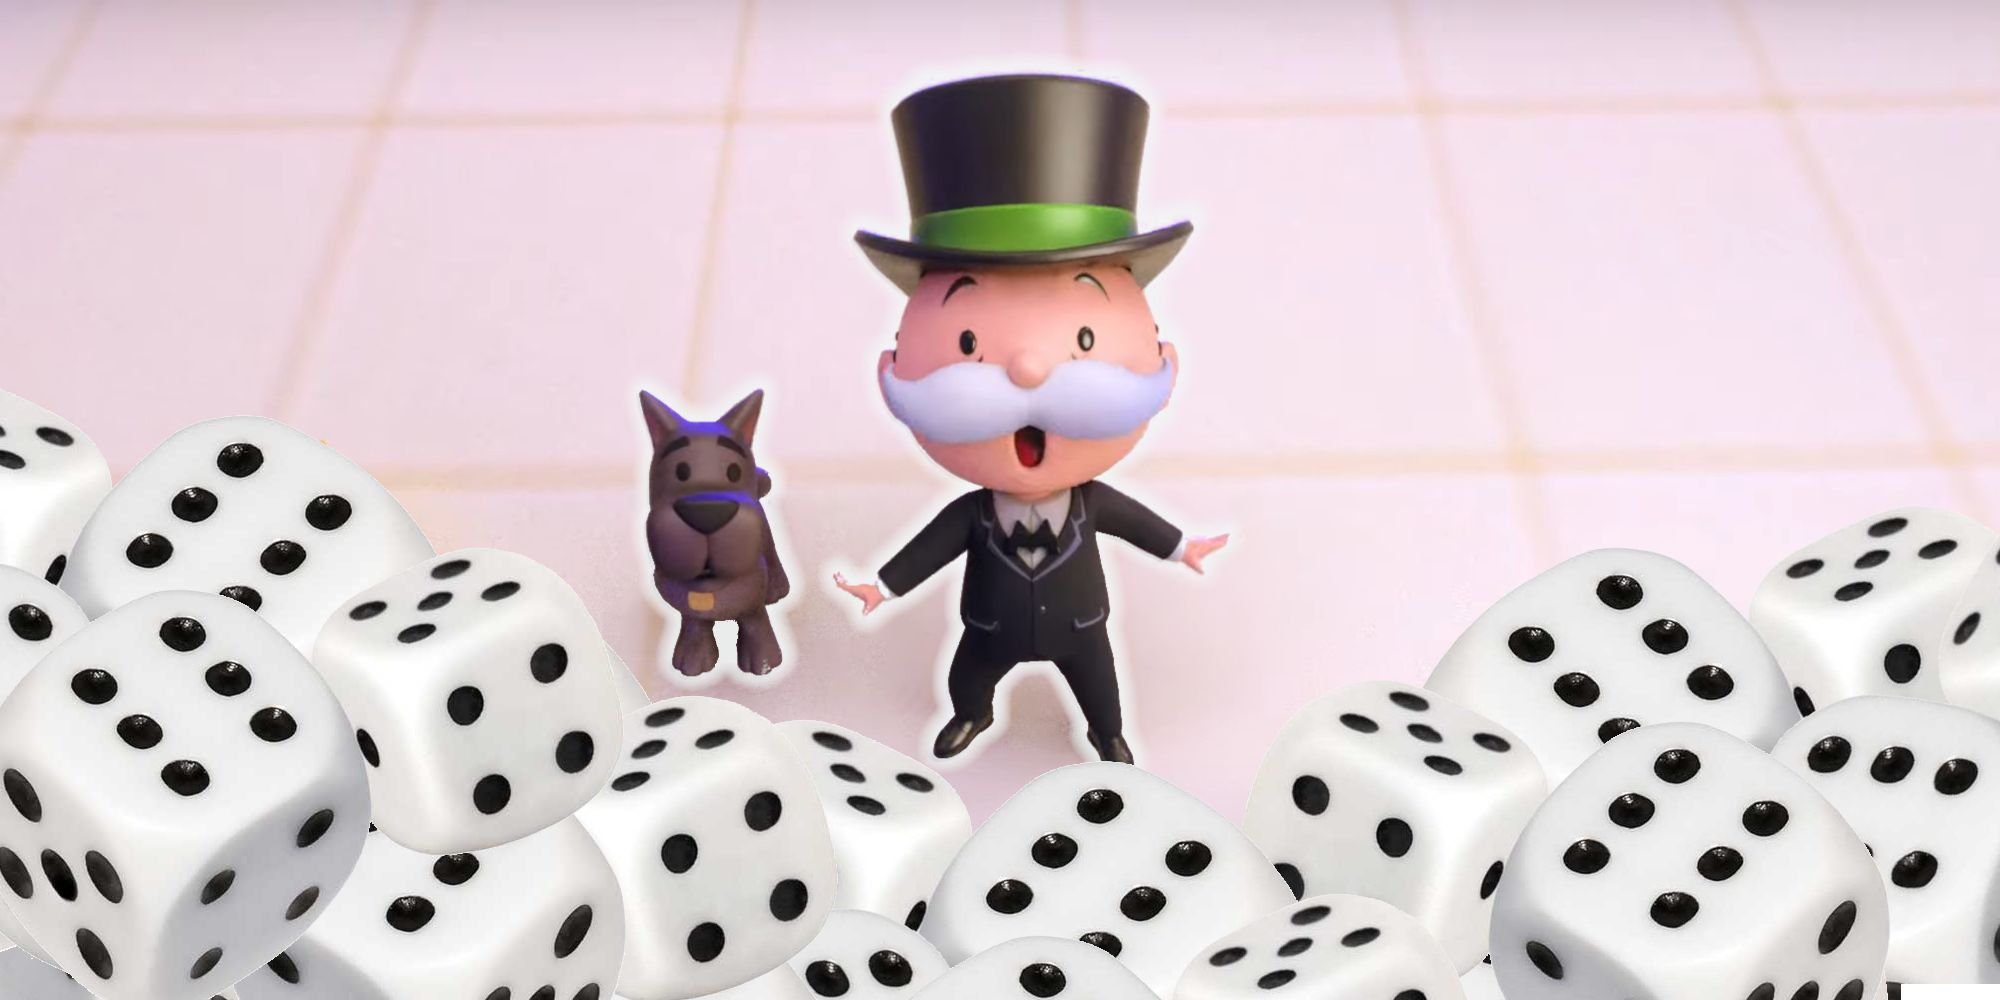 Monopoly Go, Mr. Monopoly und sein Hund, umgeben von Würfeln